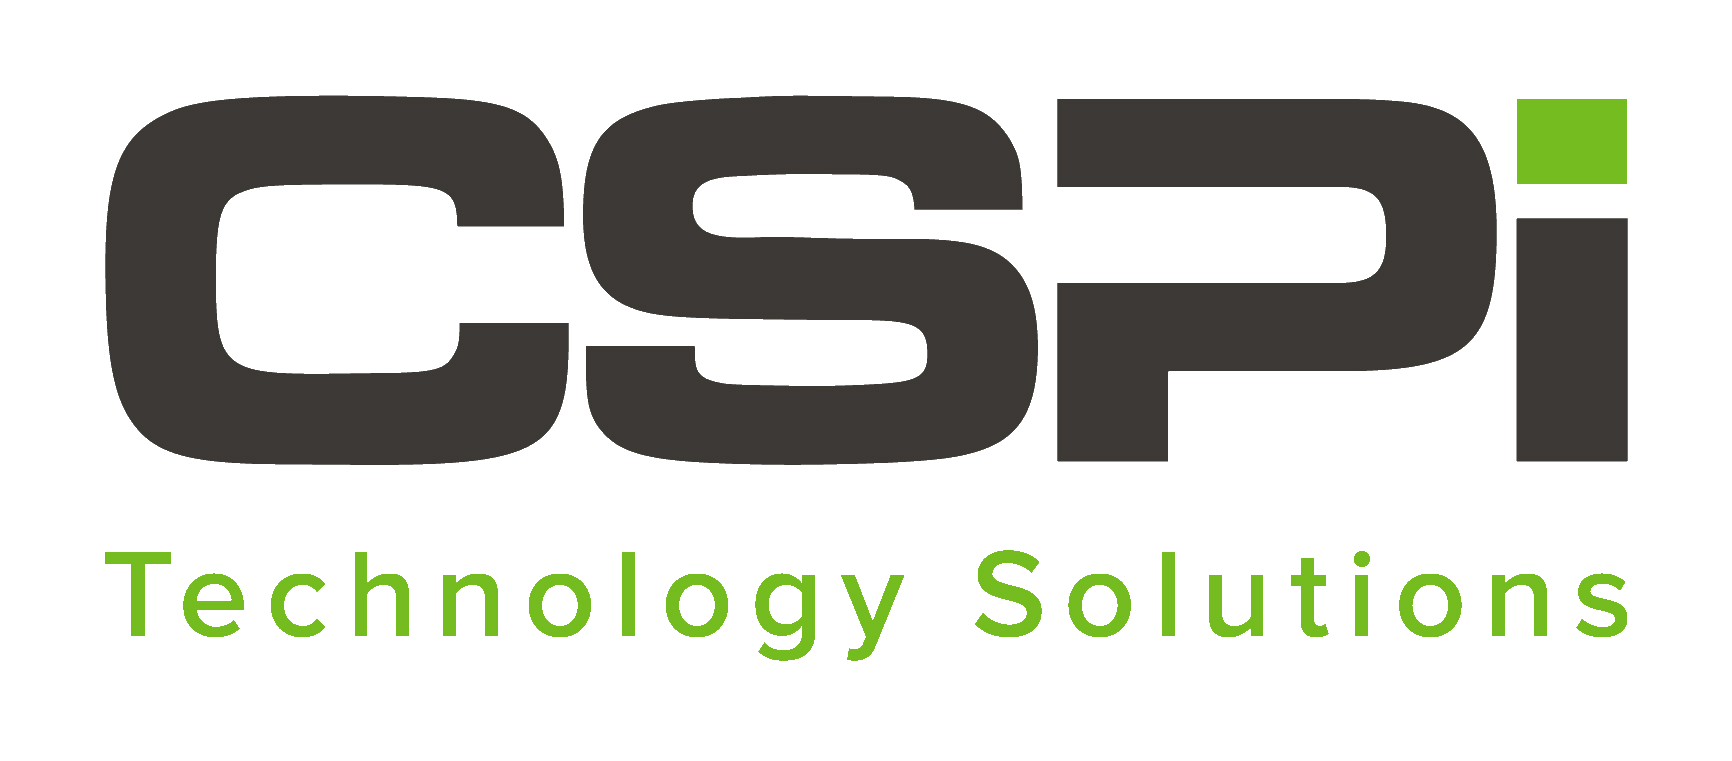 CSPi Technology Solutions Company Logo